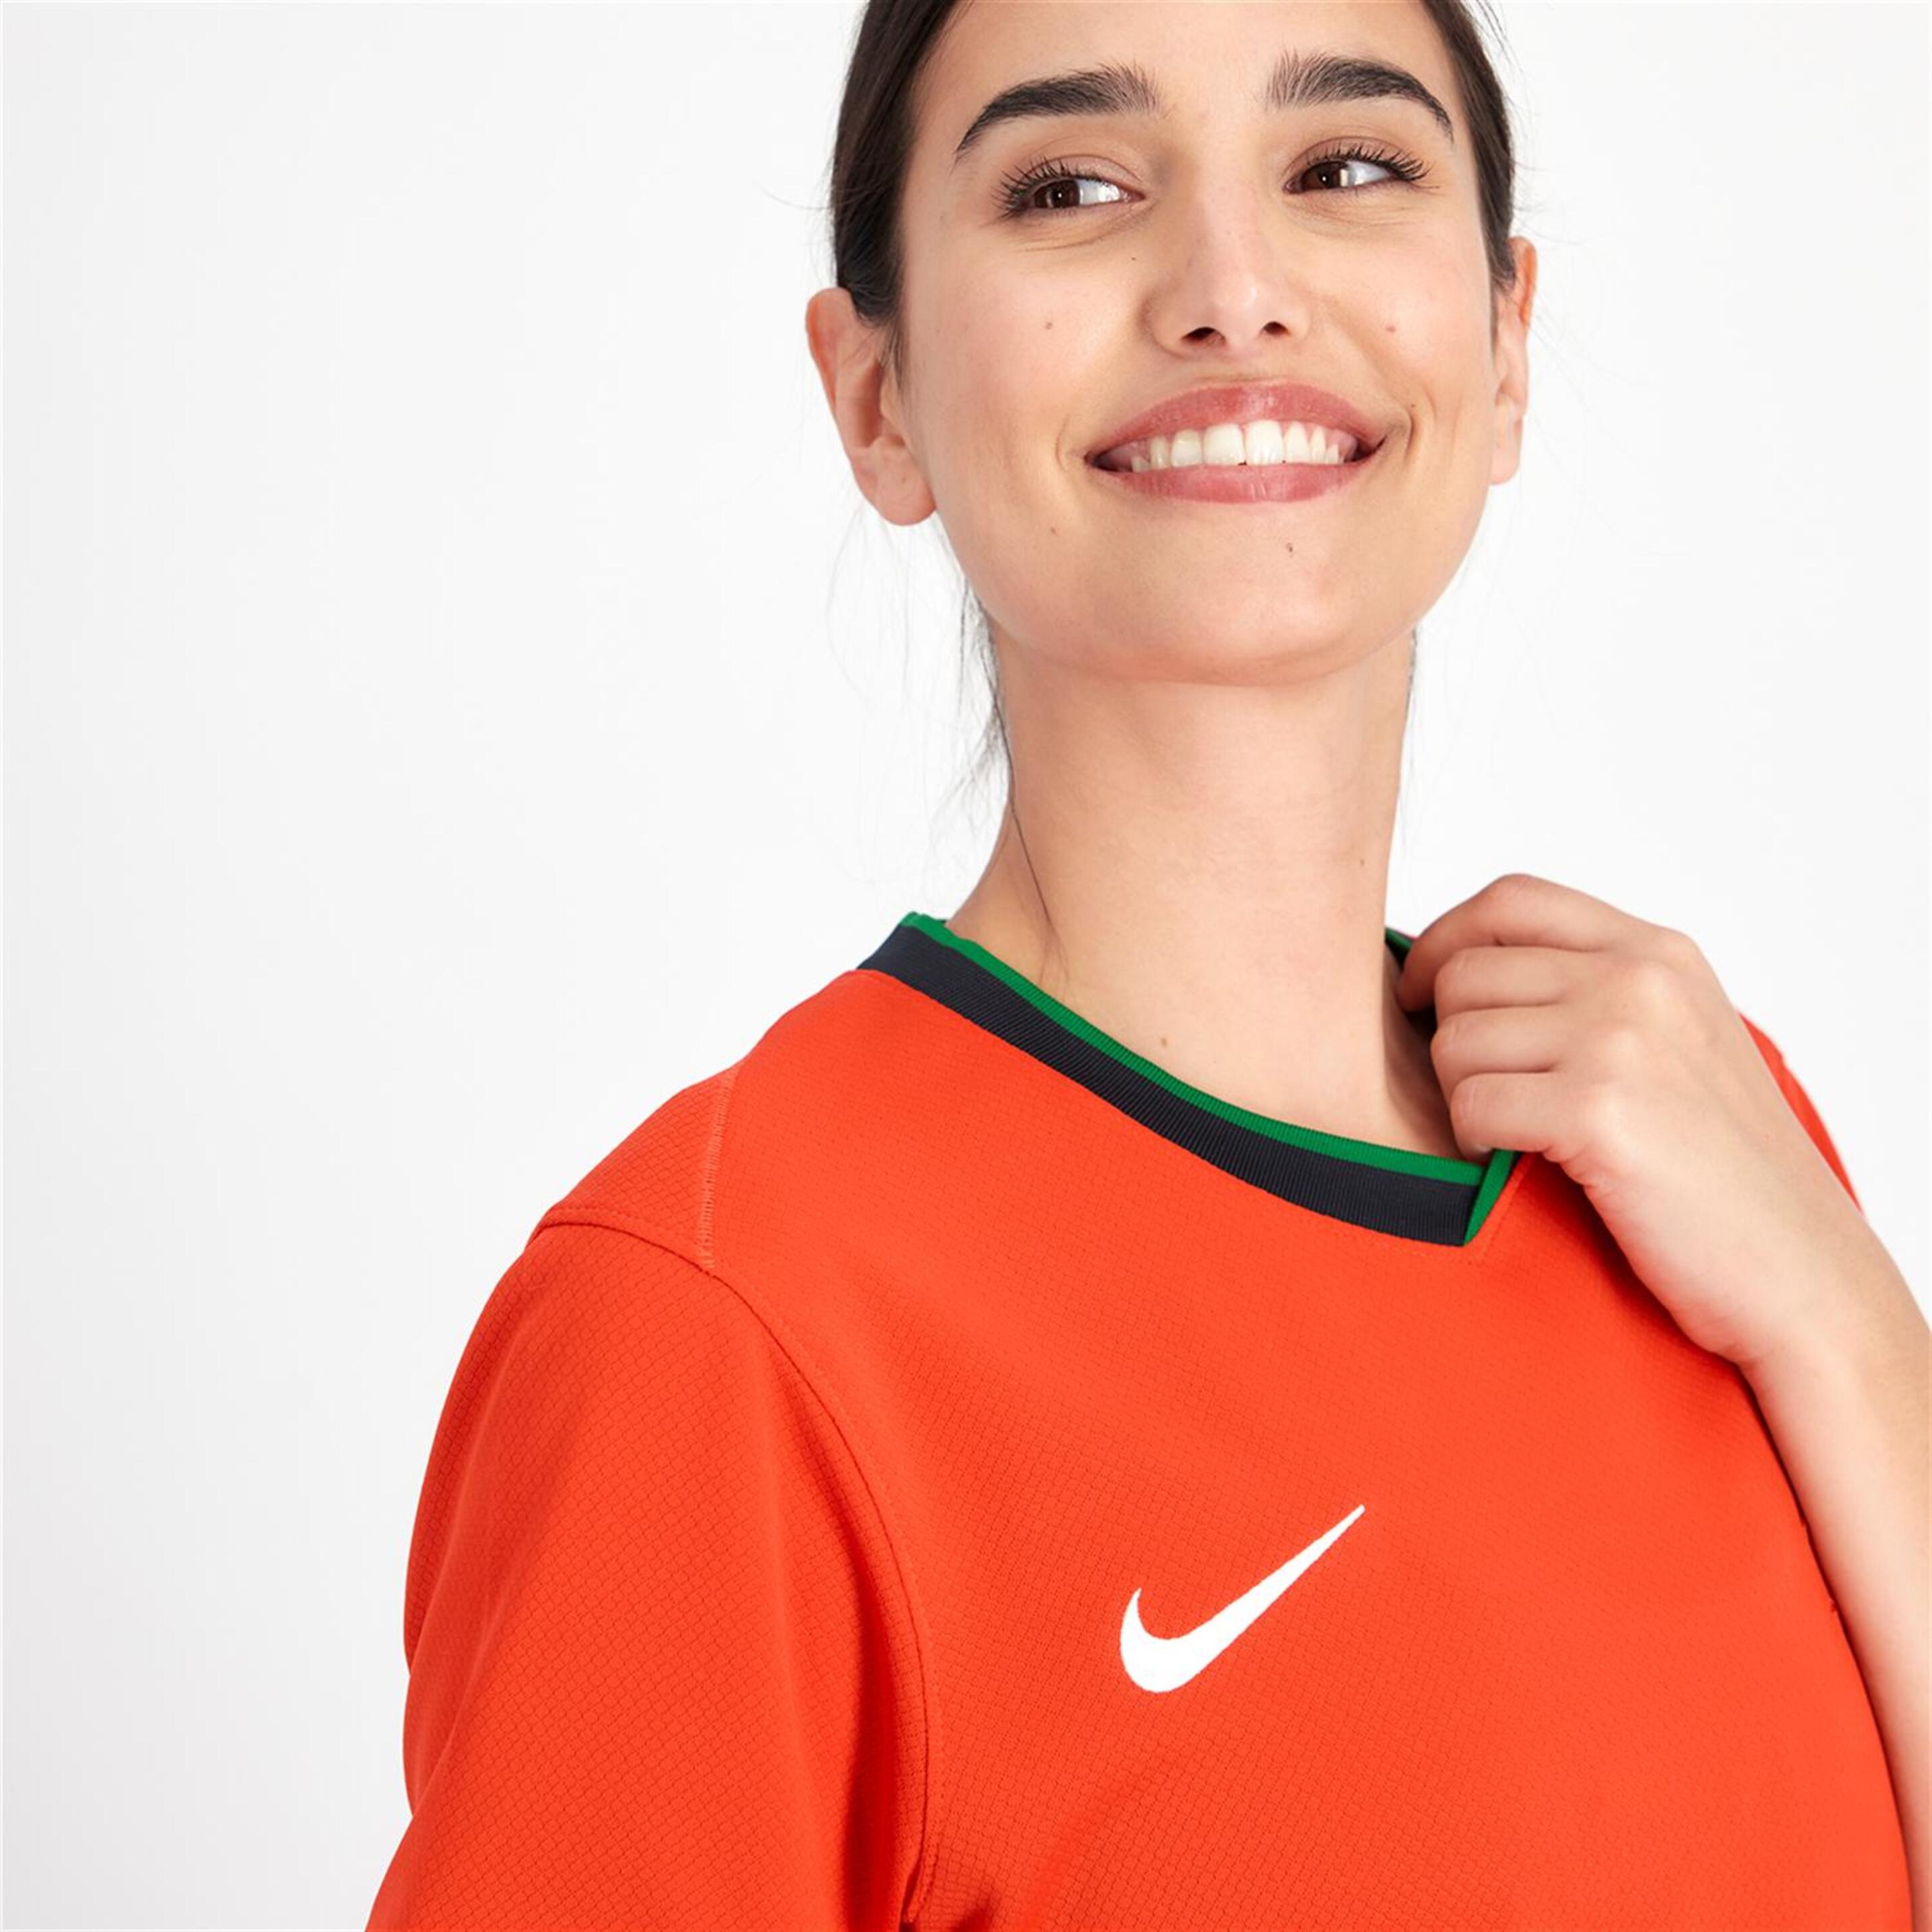 Camiseta Portugal 1ª Equipación - Rojo - Fútbol Mujer